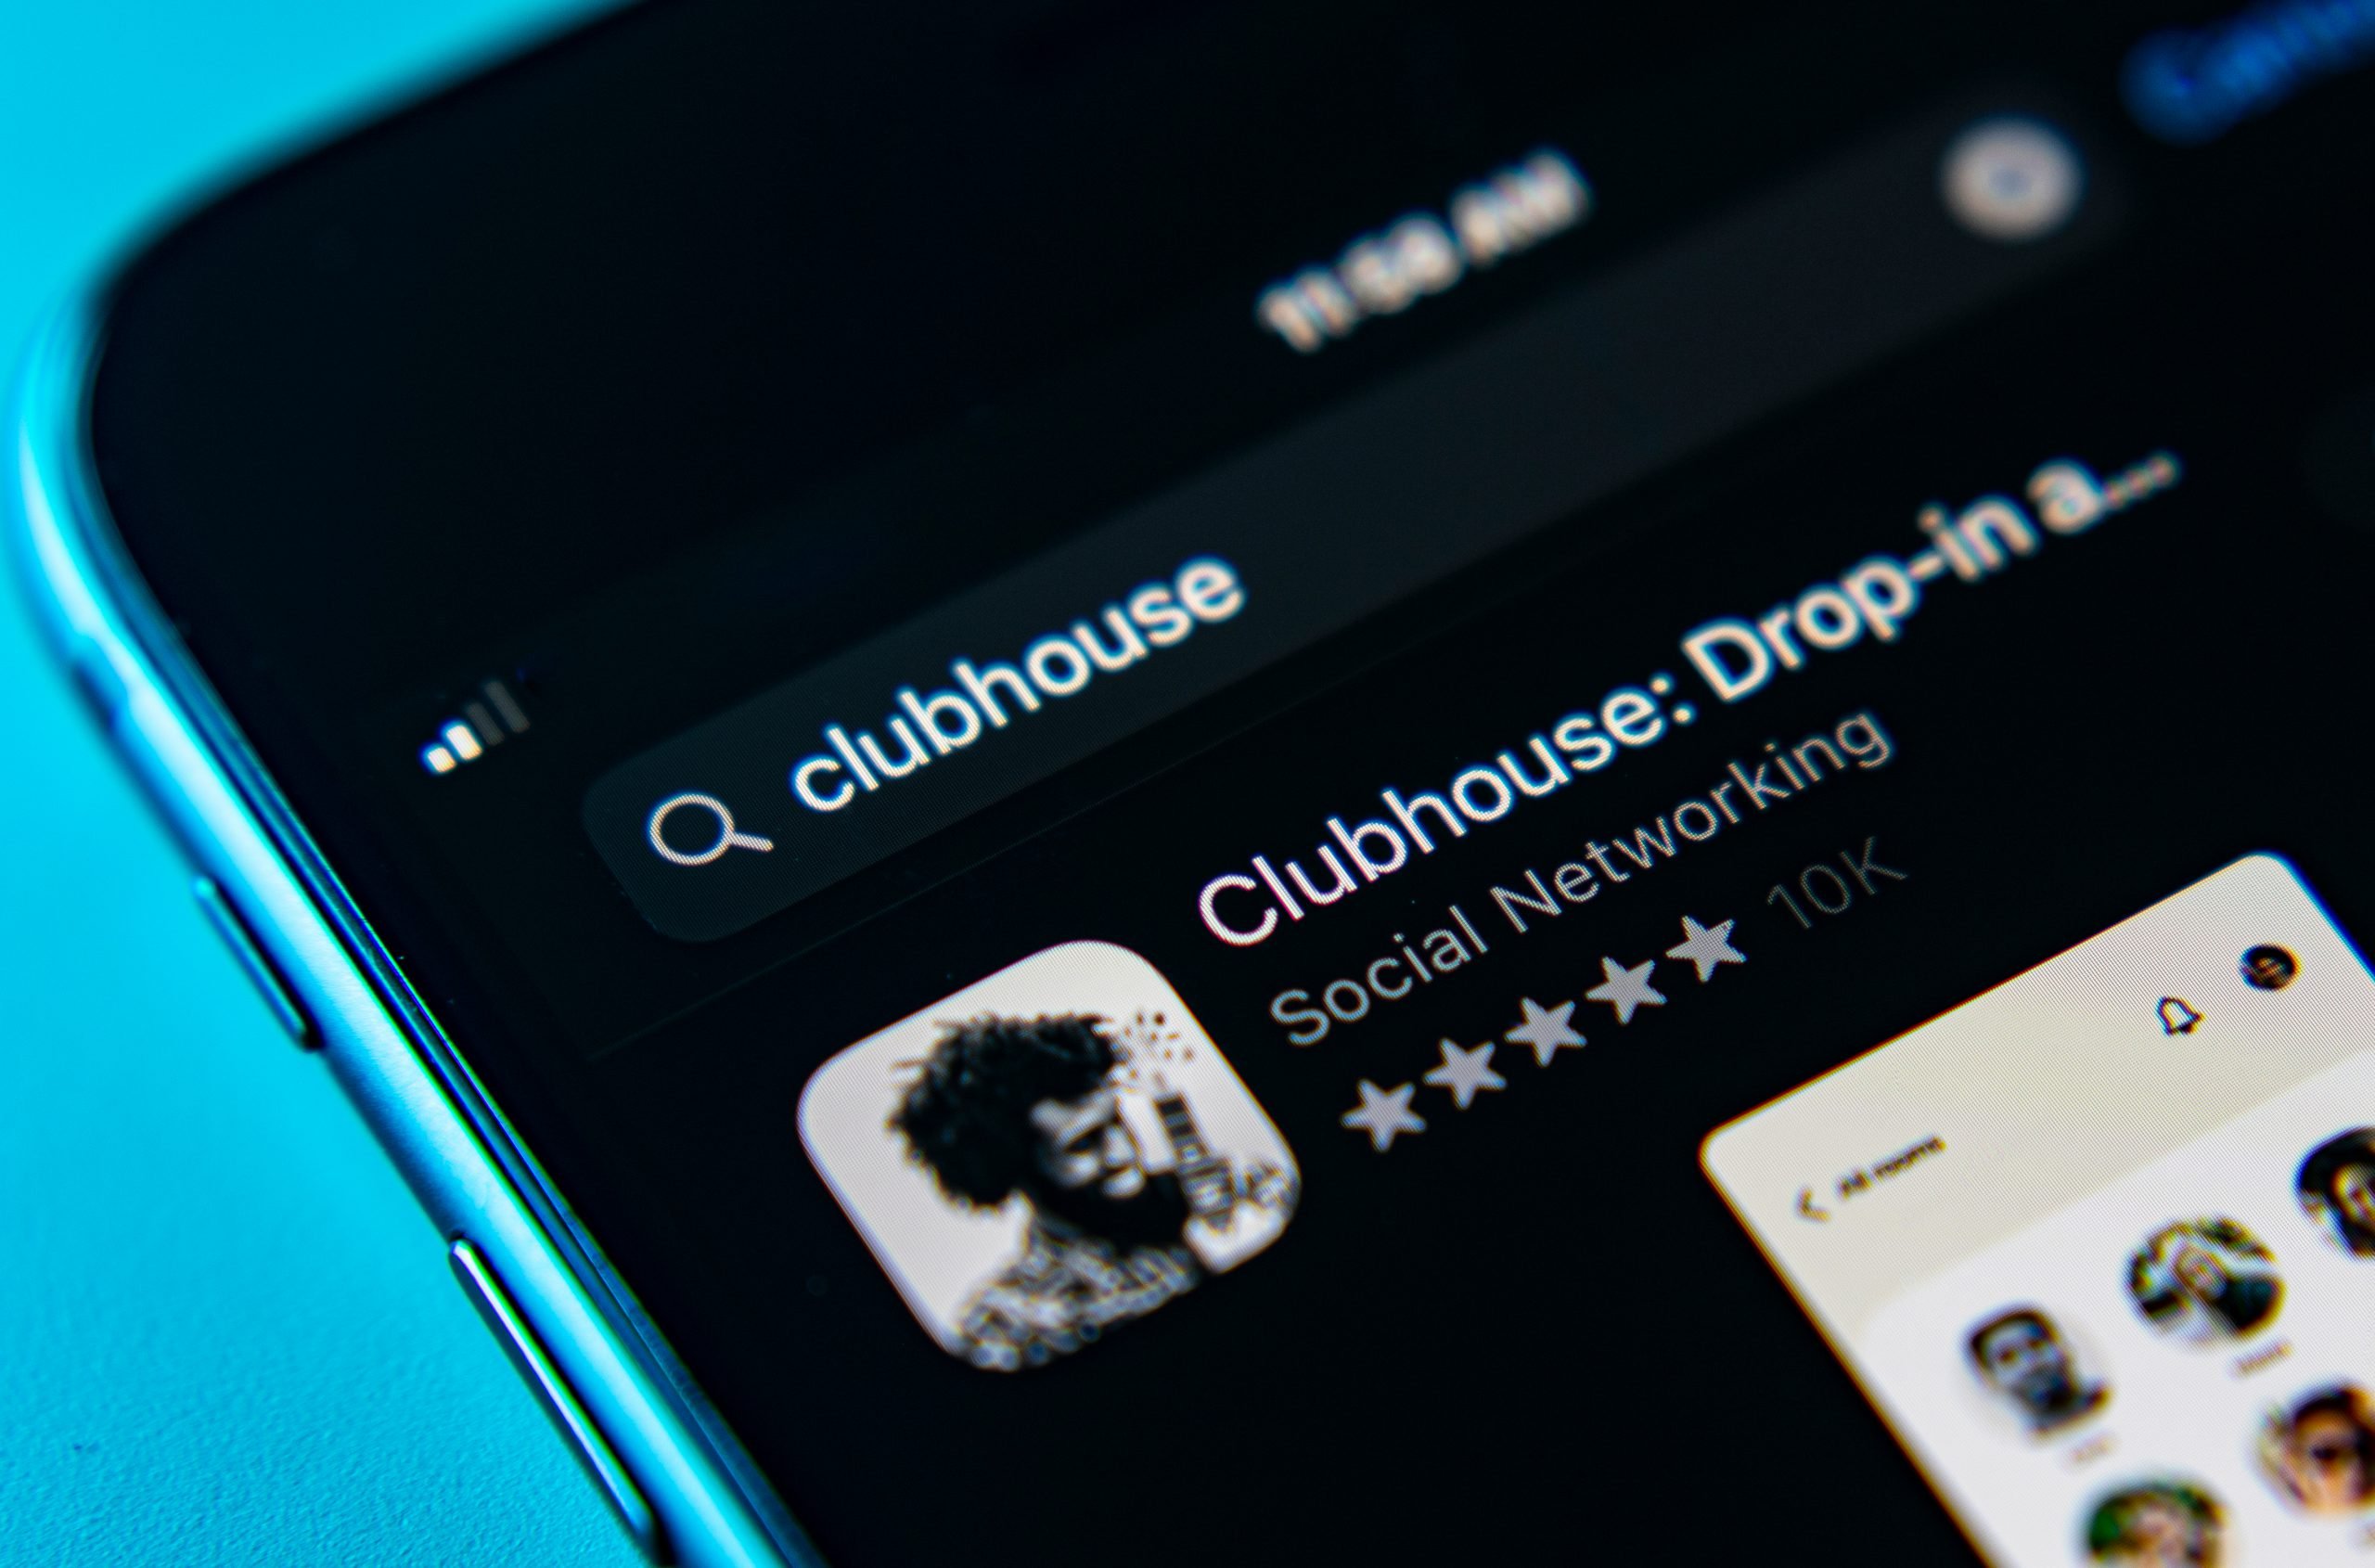 Clubhouse คือแอปที่เน้นการสร้างปฏิสัมพันธ์ระหว่างผู้ร่วมสนทนาด้วยเสียง